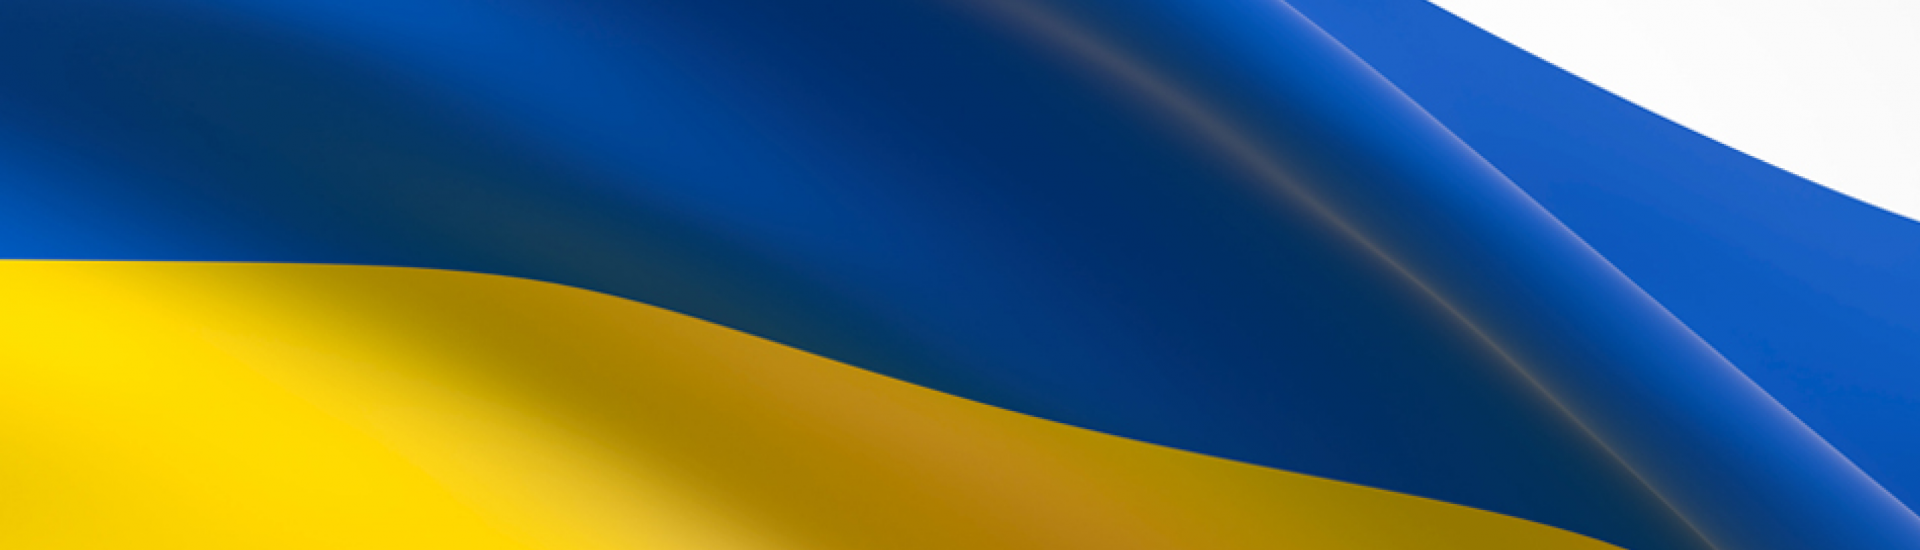 Gmina Sędziszów solidarna z Ukrainą